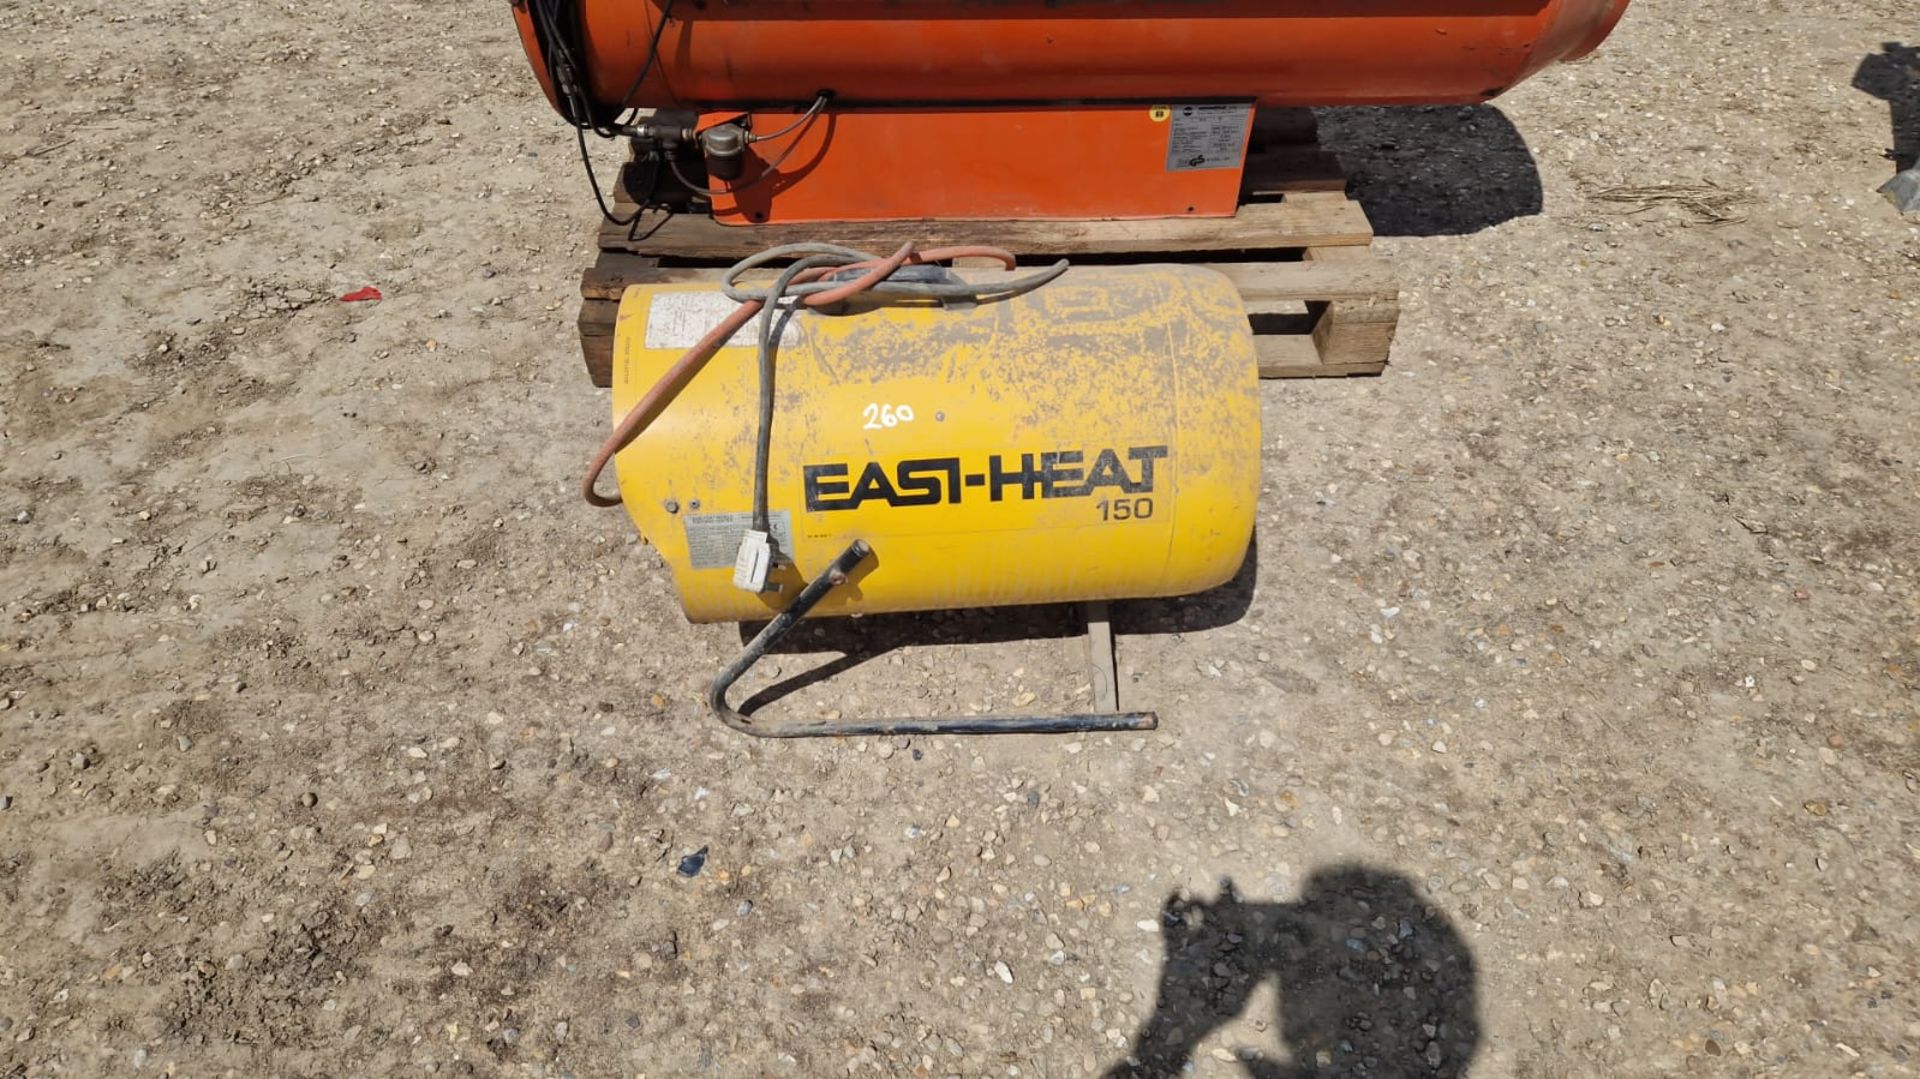 Easi-Heat 150 diesel space heater, passed PAT test